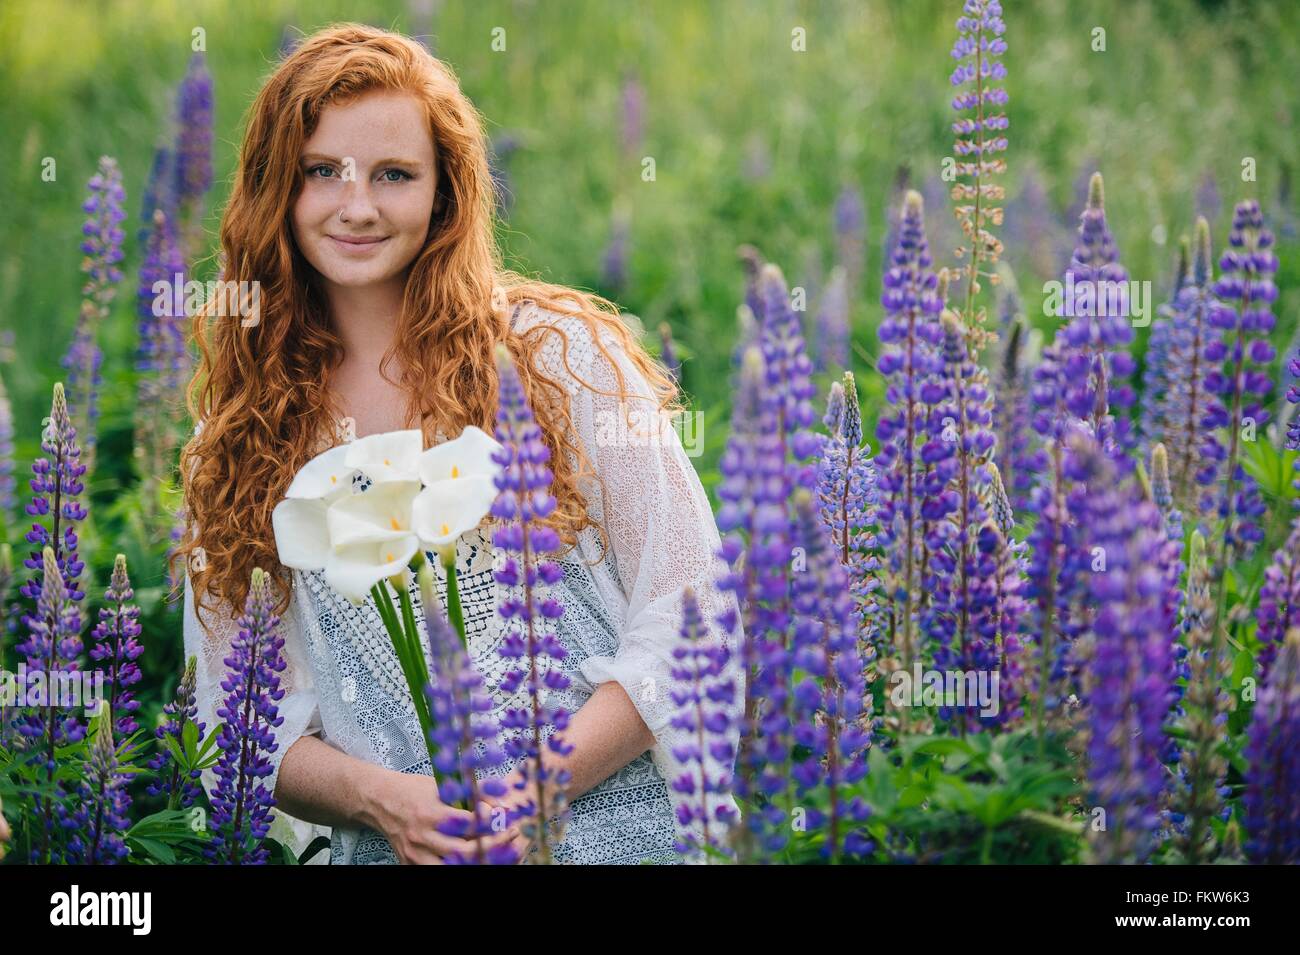 Portrait de jeune femme parmi les fleurs pourpre holding bunch of lilies Banque D'Images